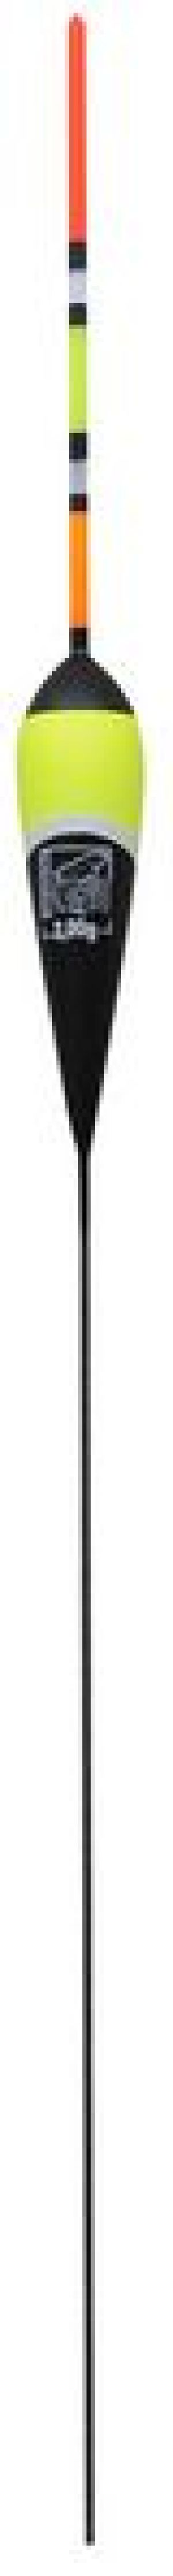 Robinson Spławik multicolor 3.50 g, 1 szt. (4S-M03-035) 1